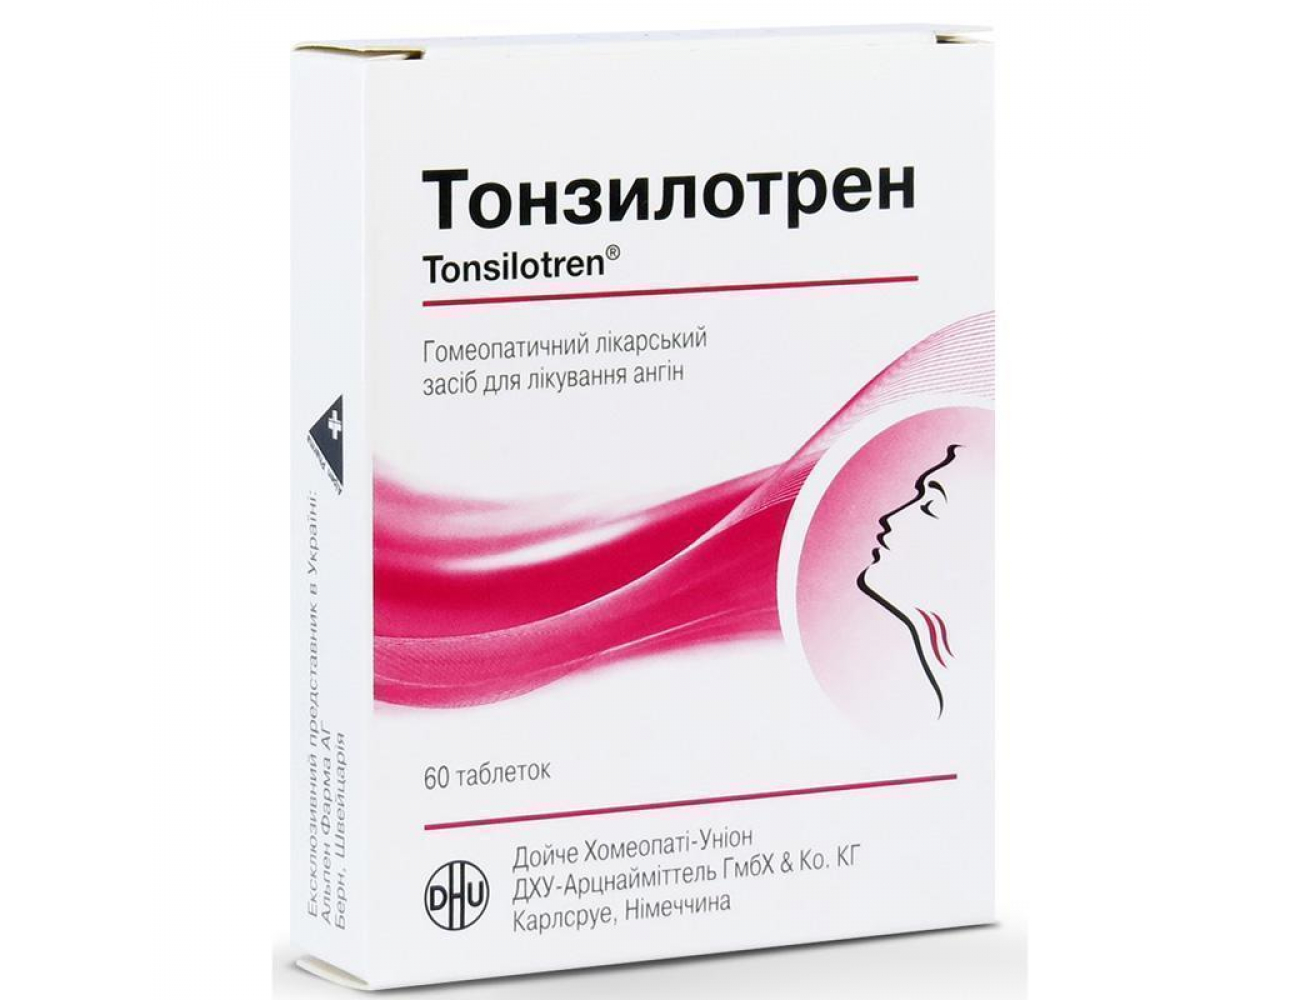 Тонзилотрен - гомеопатическое лекарственное средство для лечения ангины